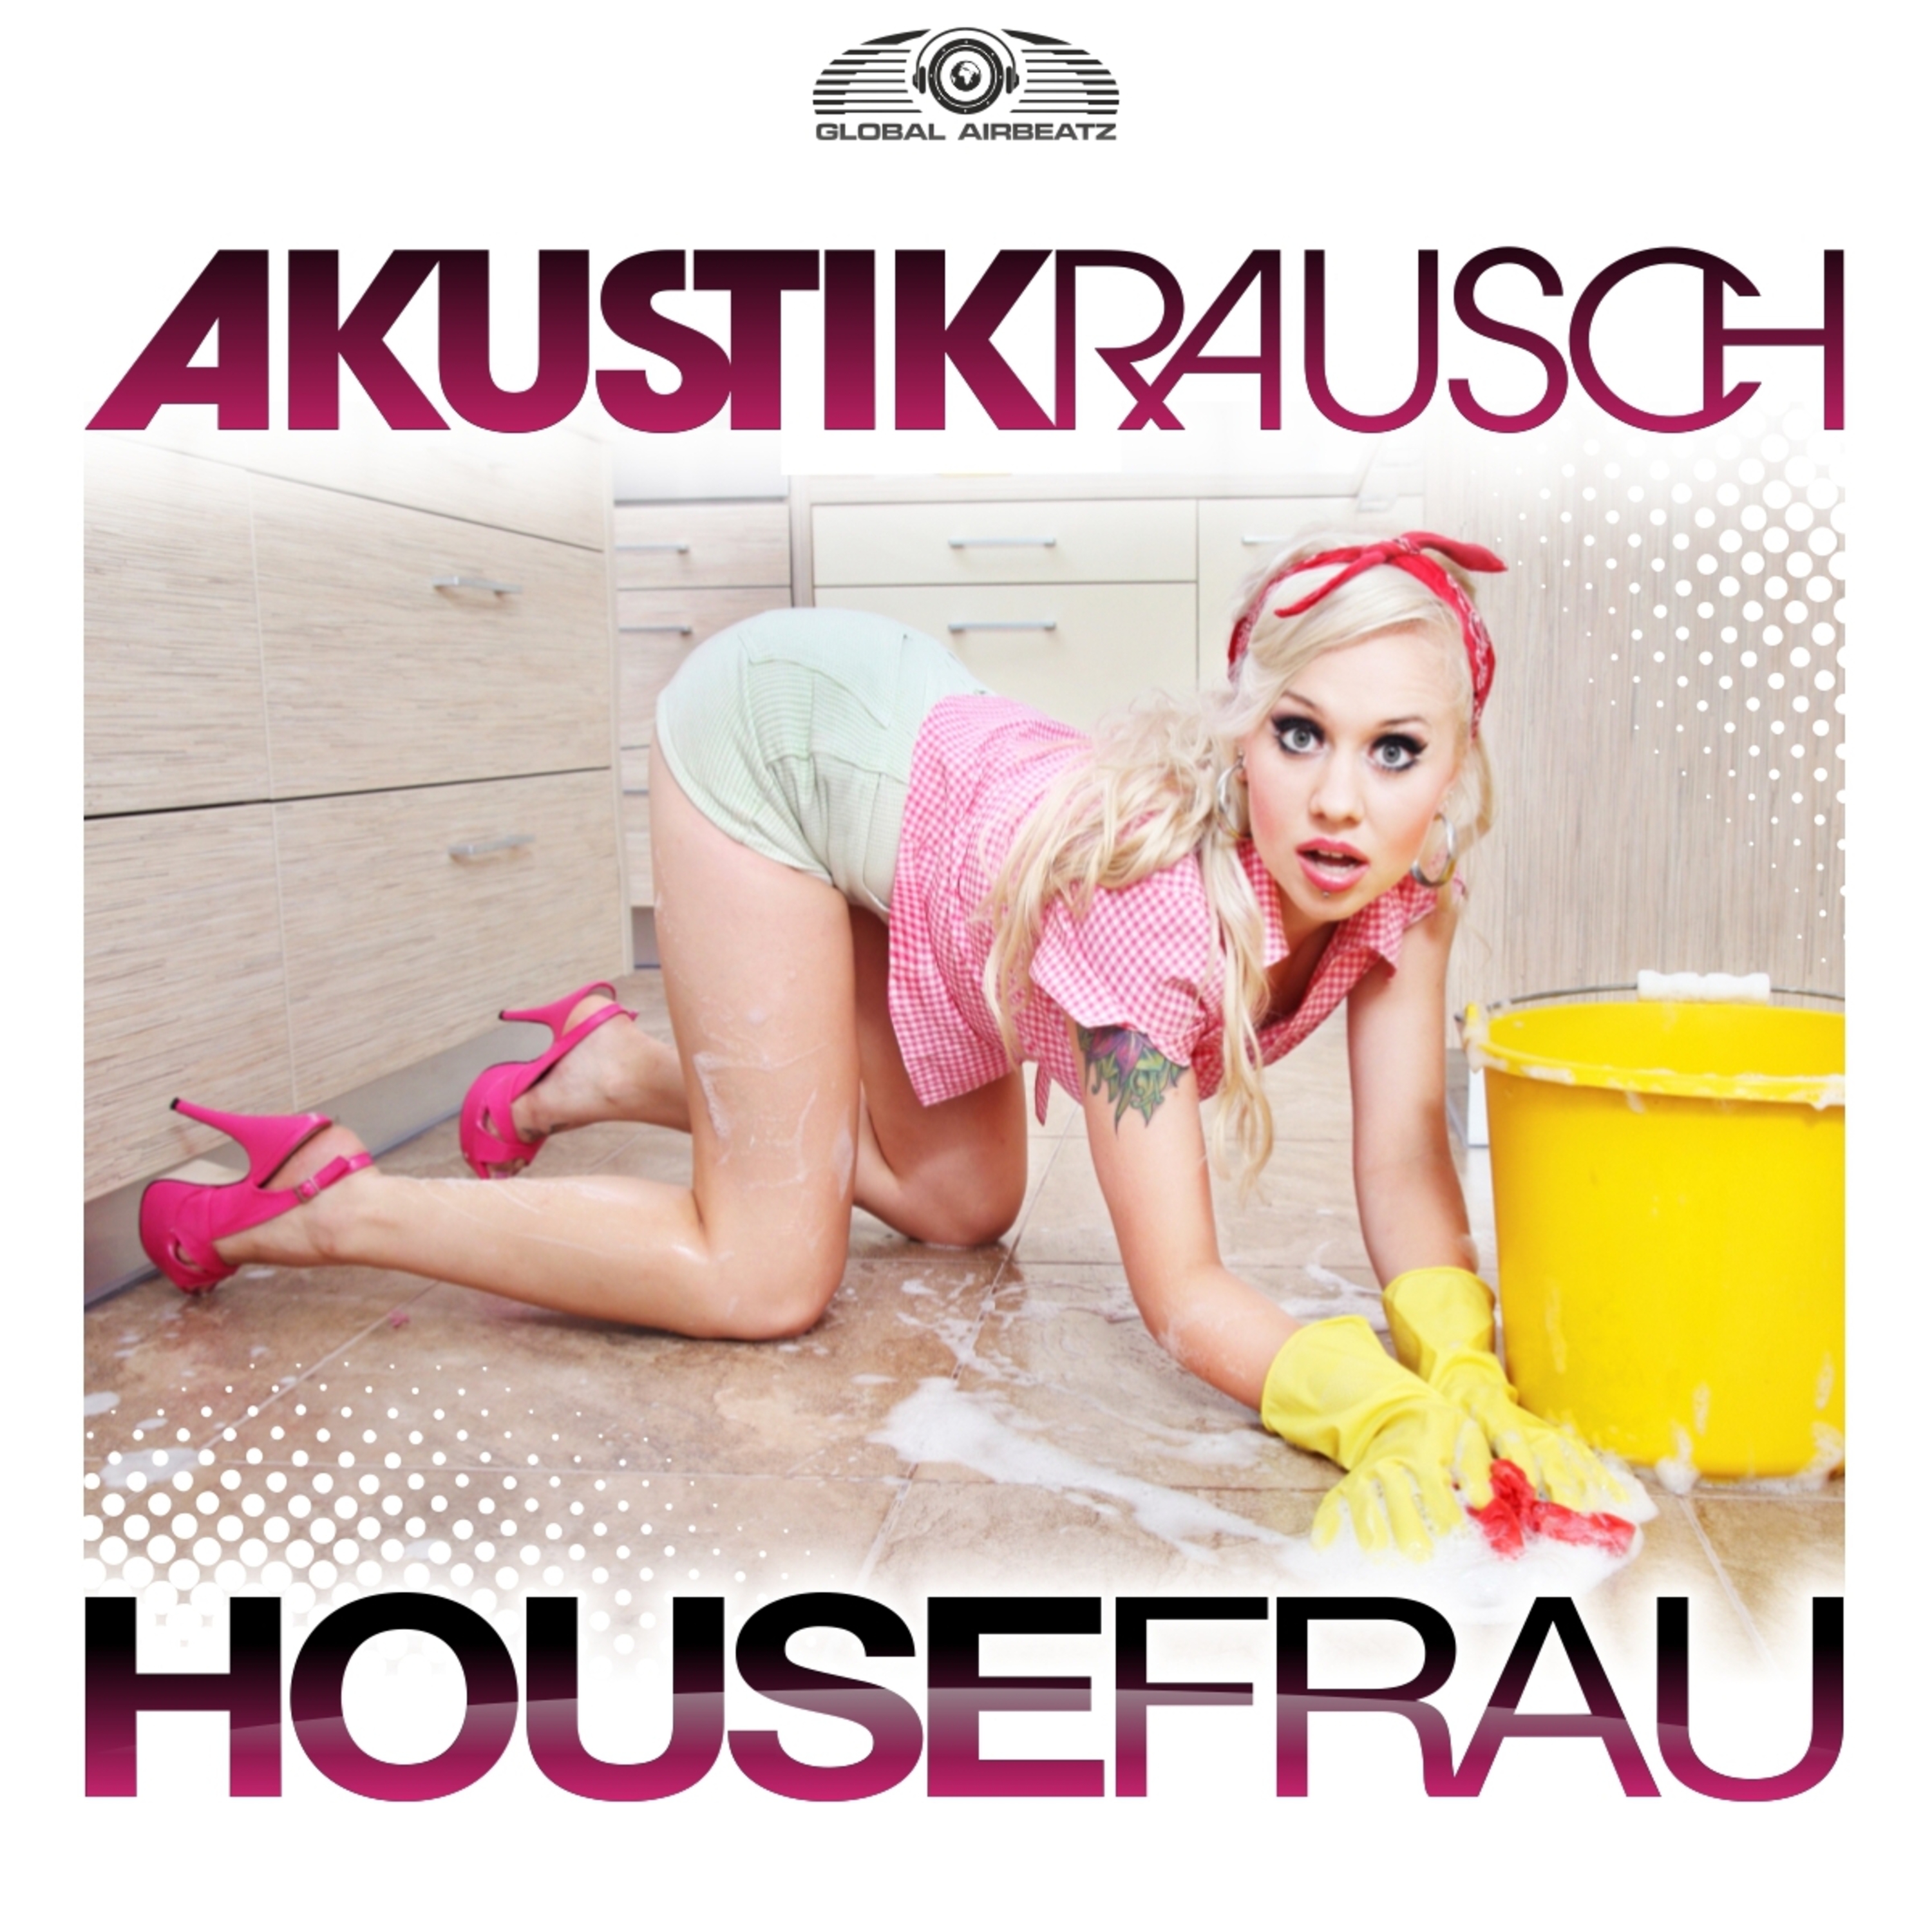 Housefrau (G4bby feat. BazzBoyz Remix)